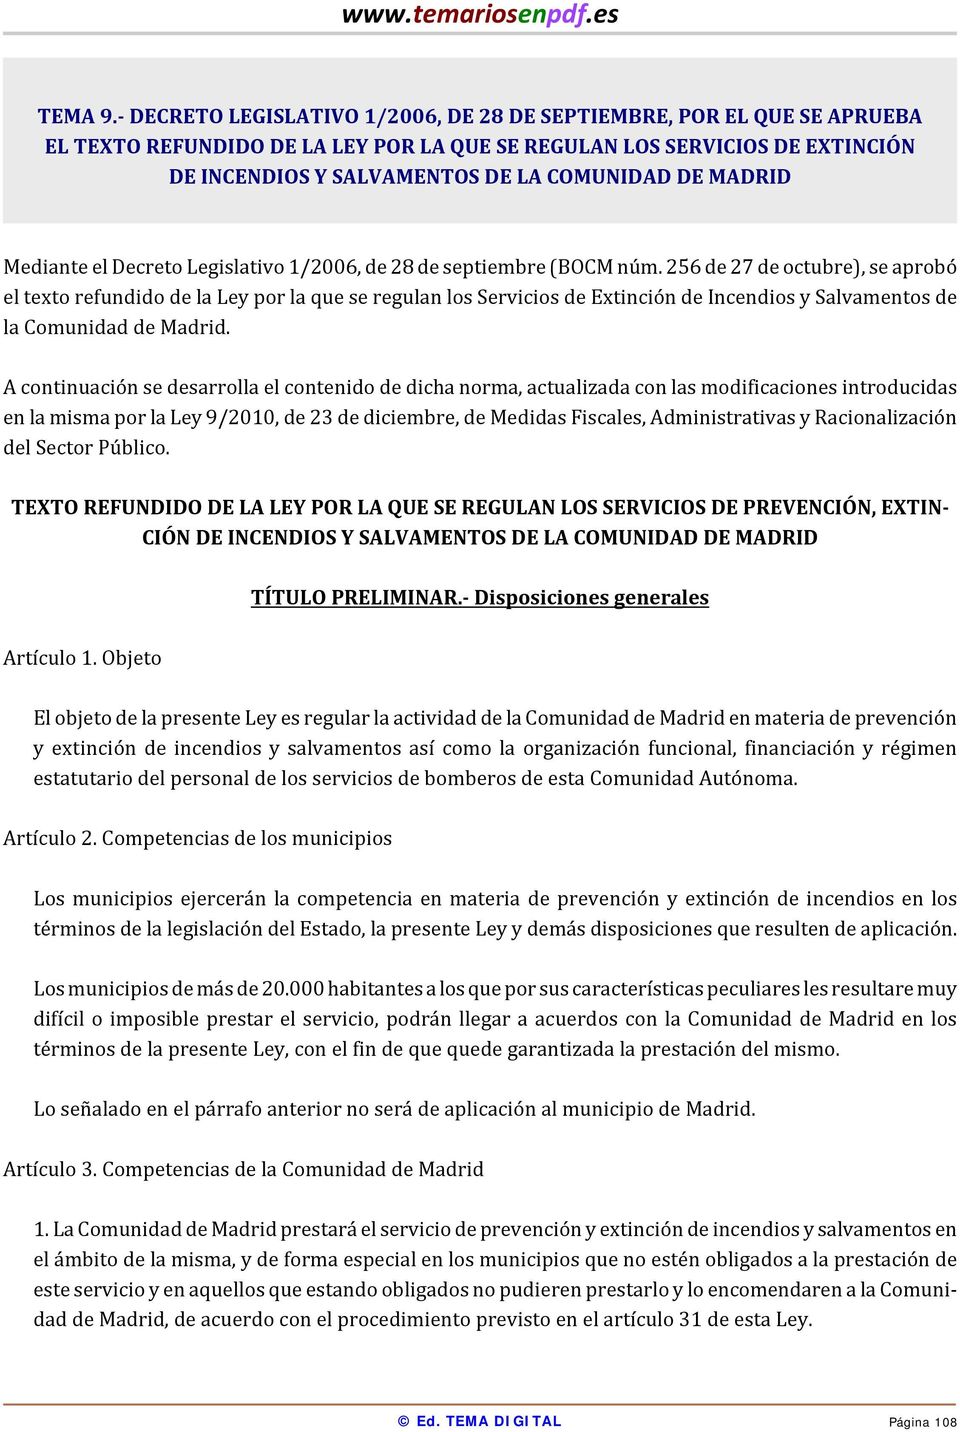 MADRID Mediante el Decreto Legislativo 1/2006, de 28 de septiembre (BOCM núm.